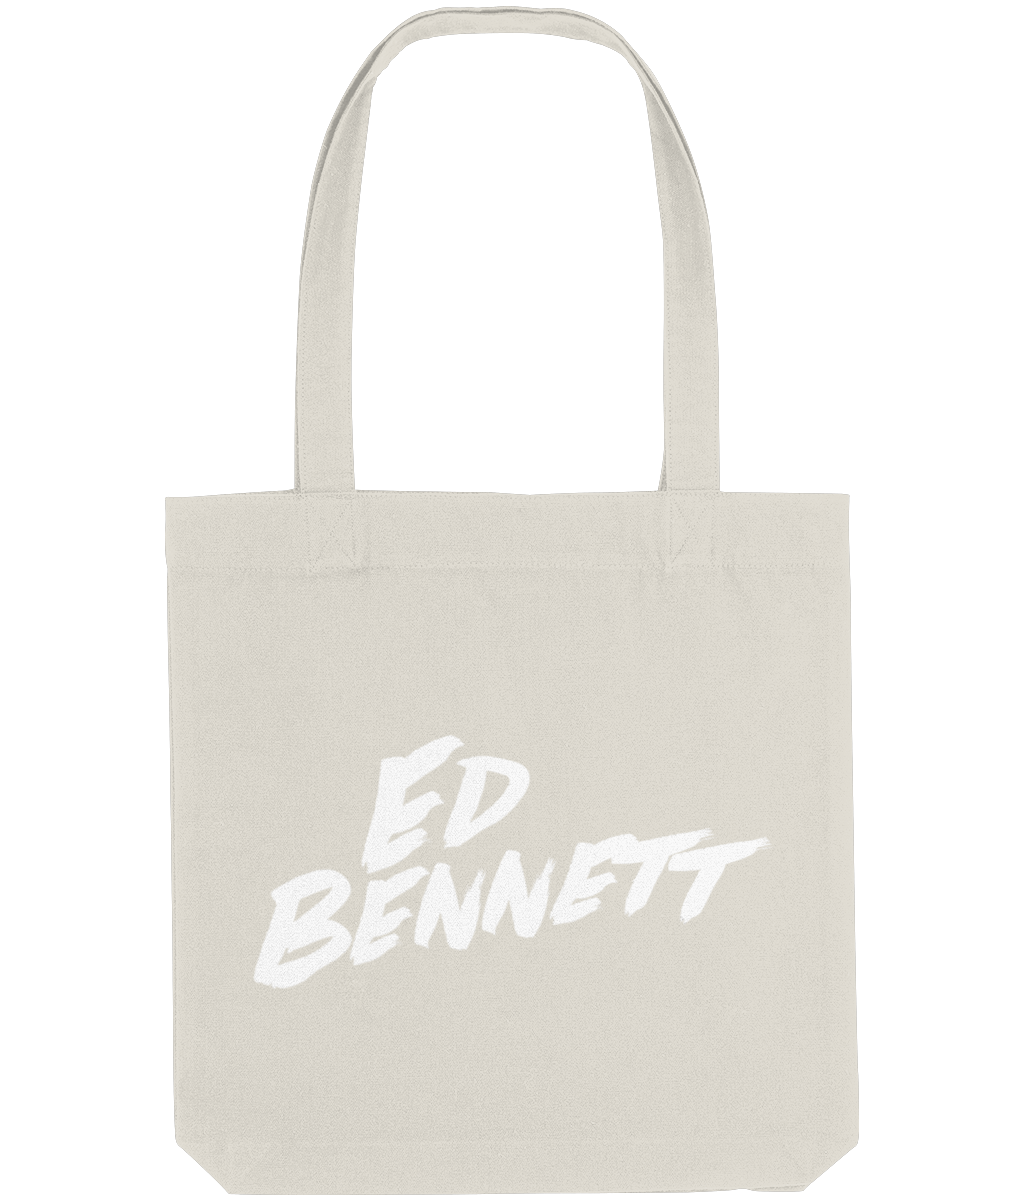 Ed Bennett Tote Bag